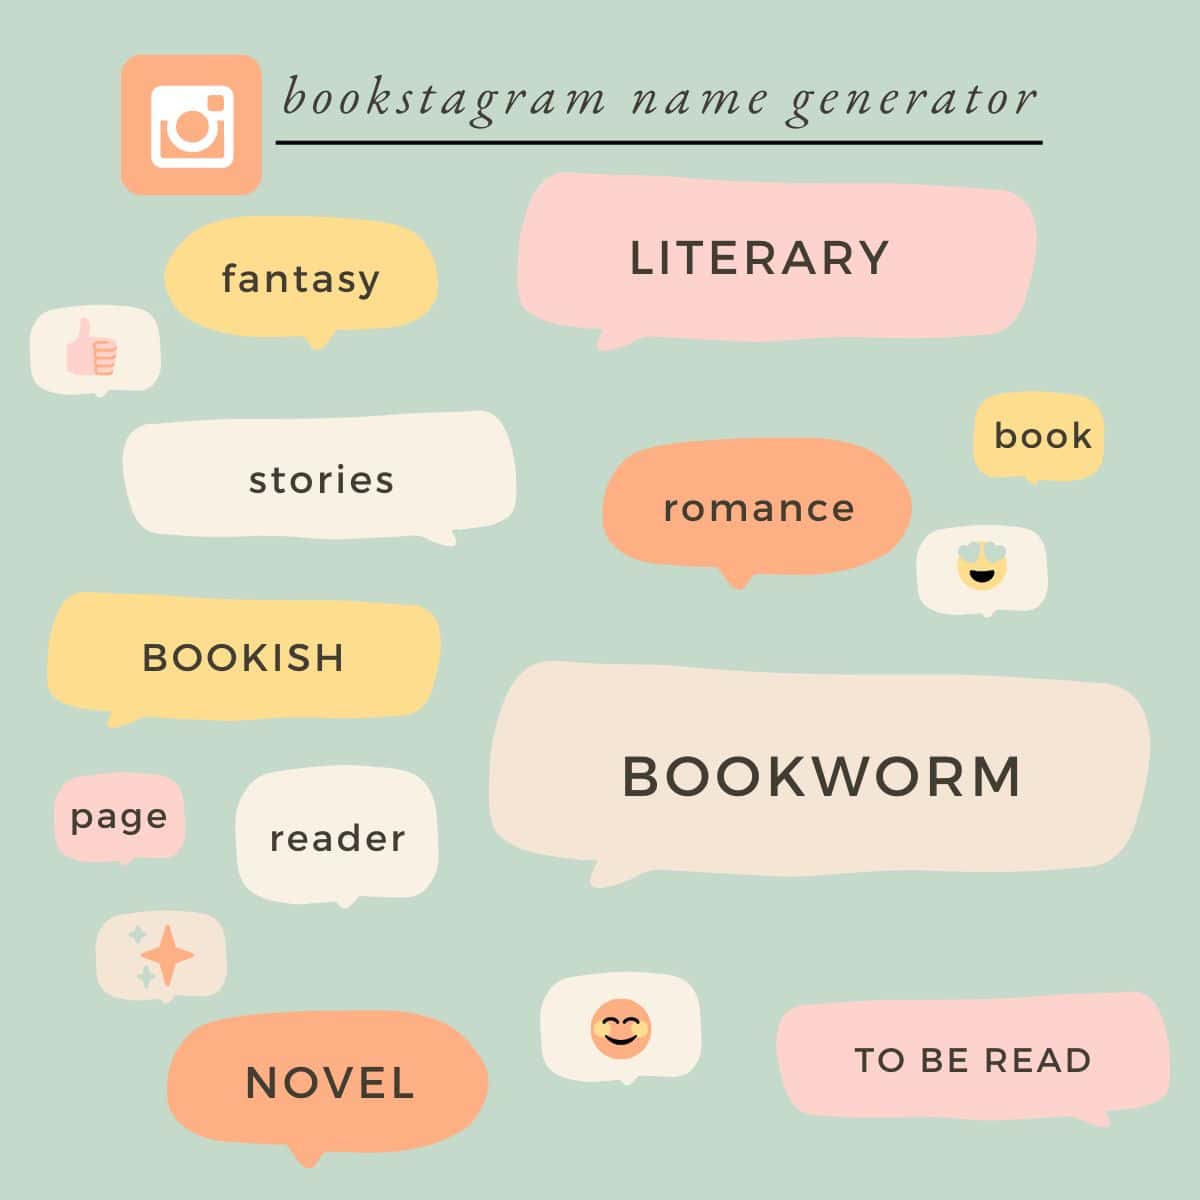 Easy Bookstagram Name Generator: Ideas for Usernames